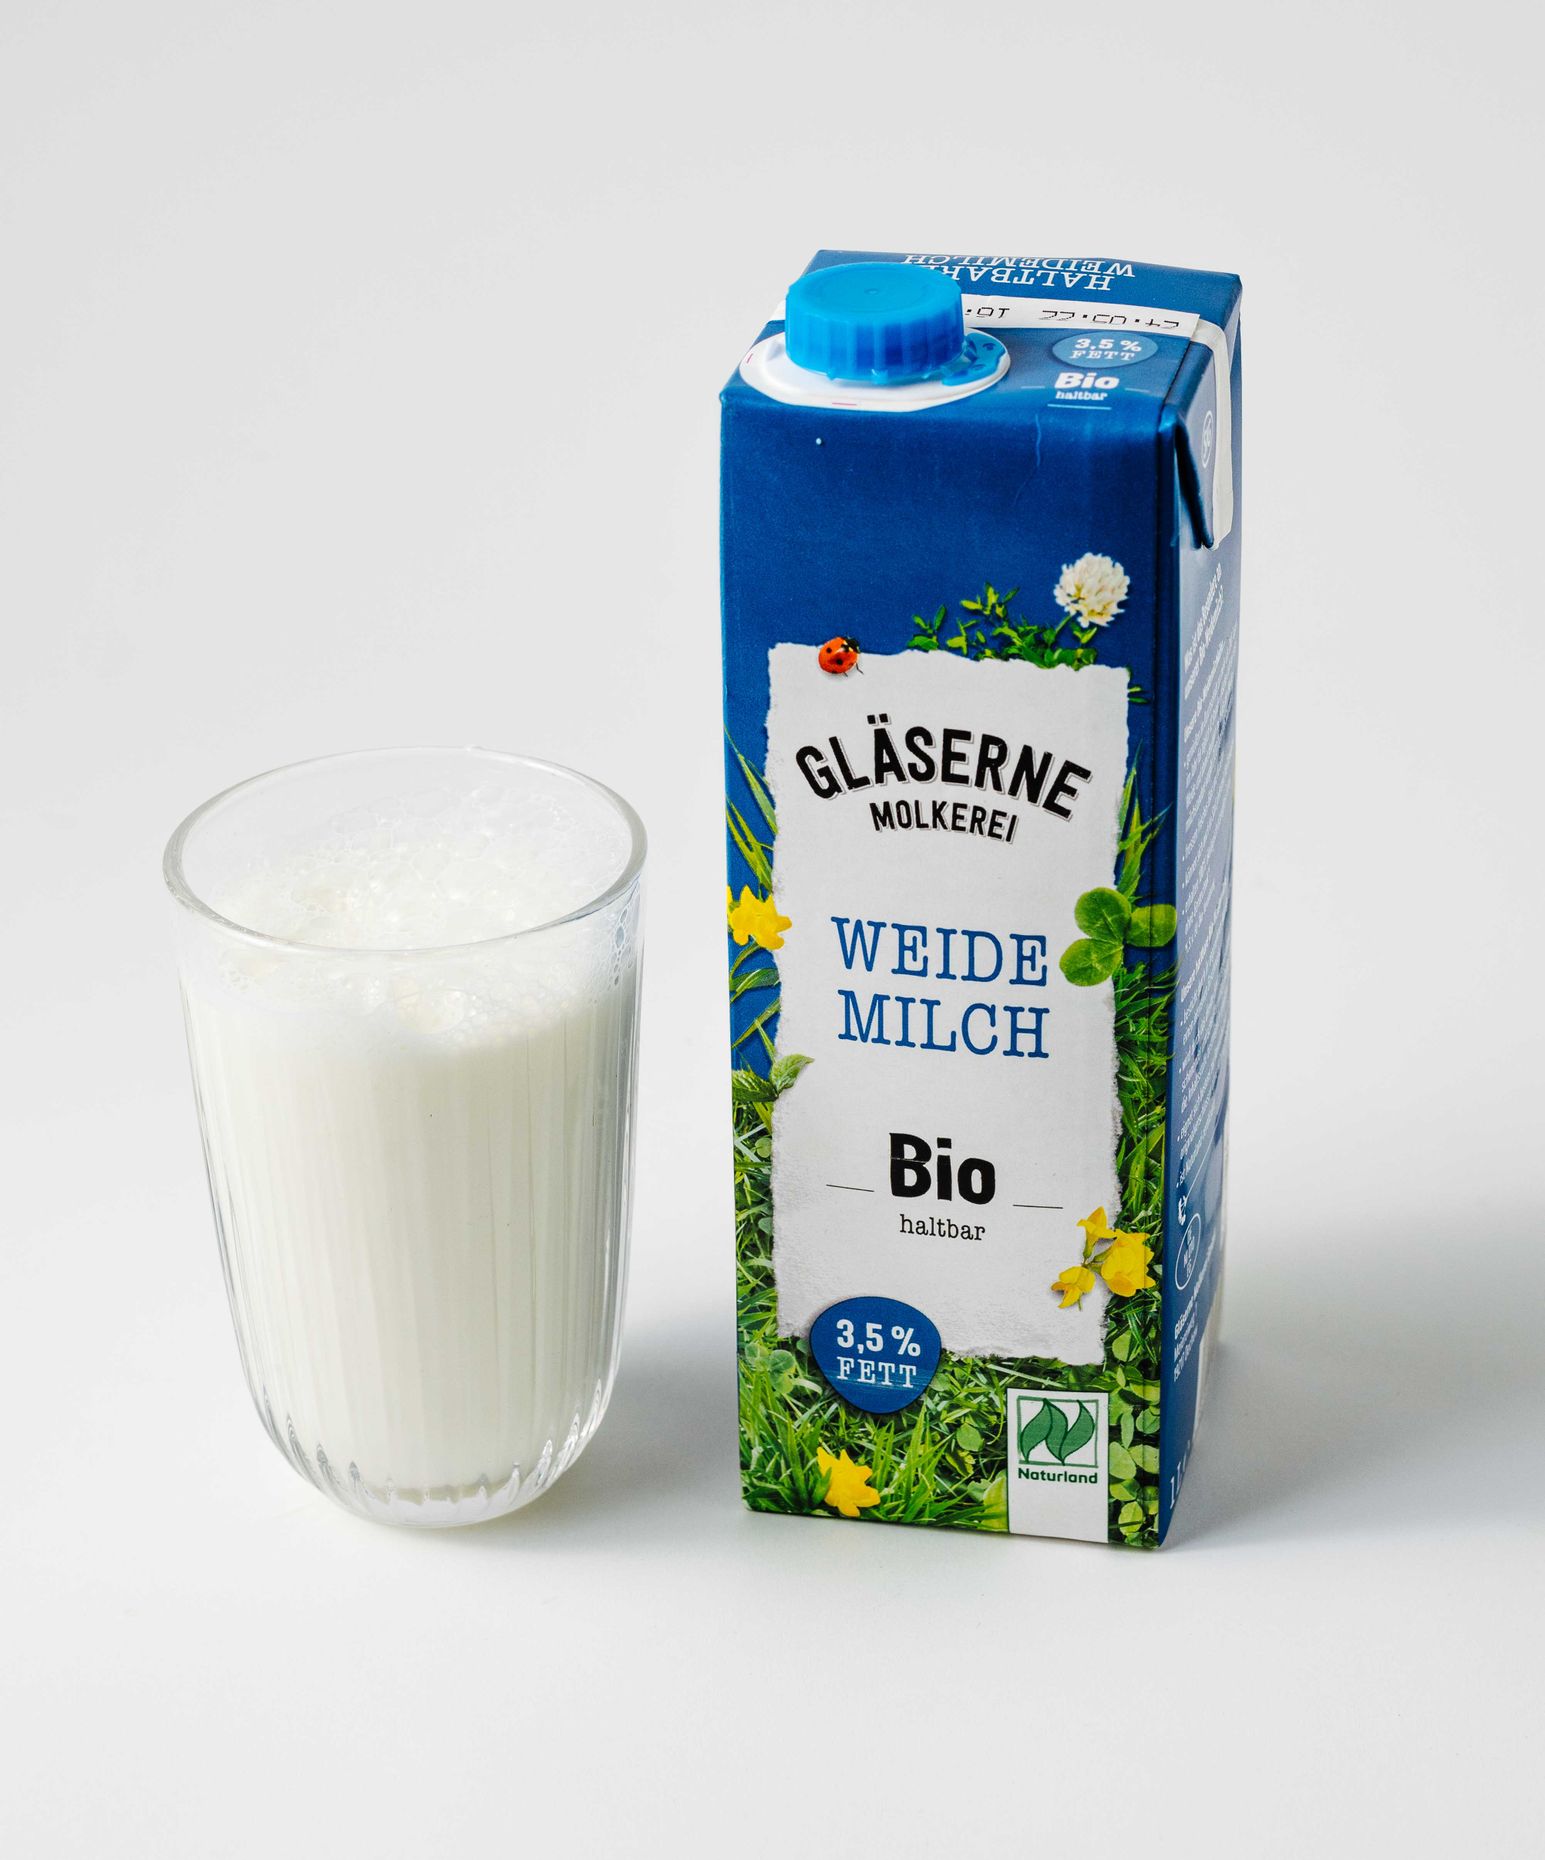 Gläserne Molkerei Bio Molkerei Milch 3,5%